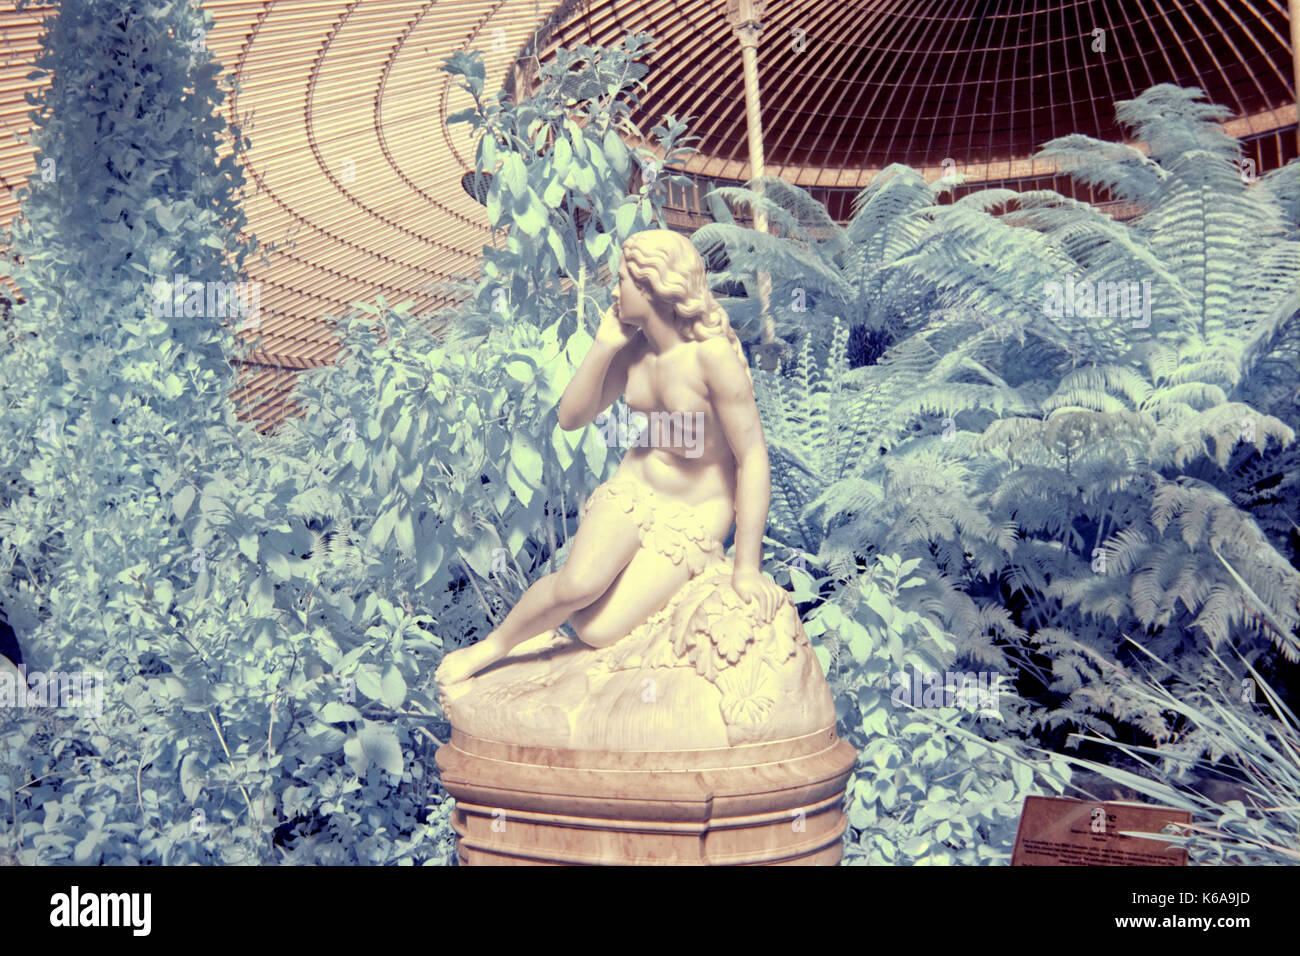 Statue von Eva, botanischen Gärten Infrarot Kamera die Versuchung Evas Kibble Palace glasgow Eve von scipione tadolini (c.1870) Stockfoto